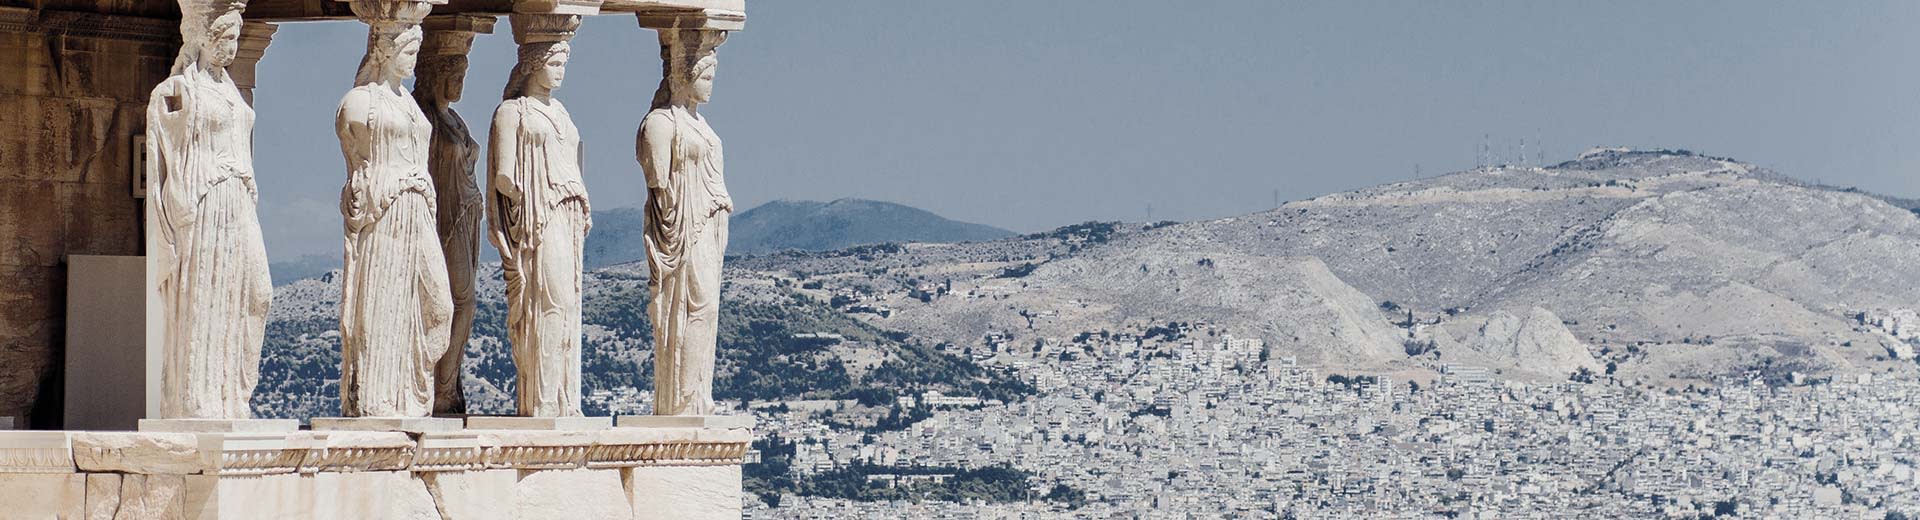 Les caryatides de l'Erechtheion à Athènes avec des montagnes en arrière-plan.